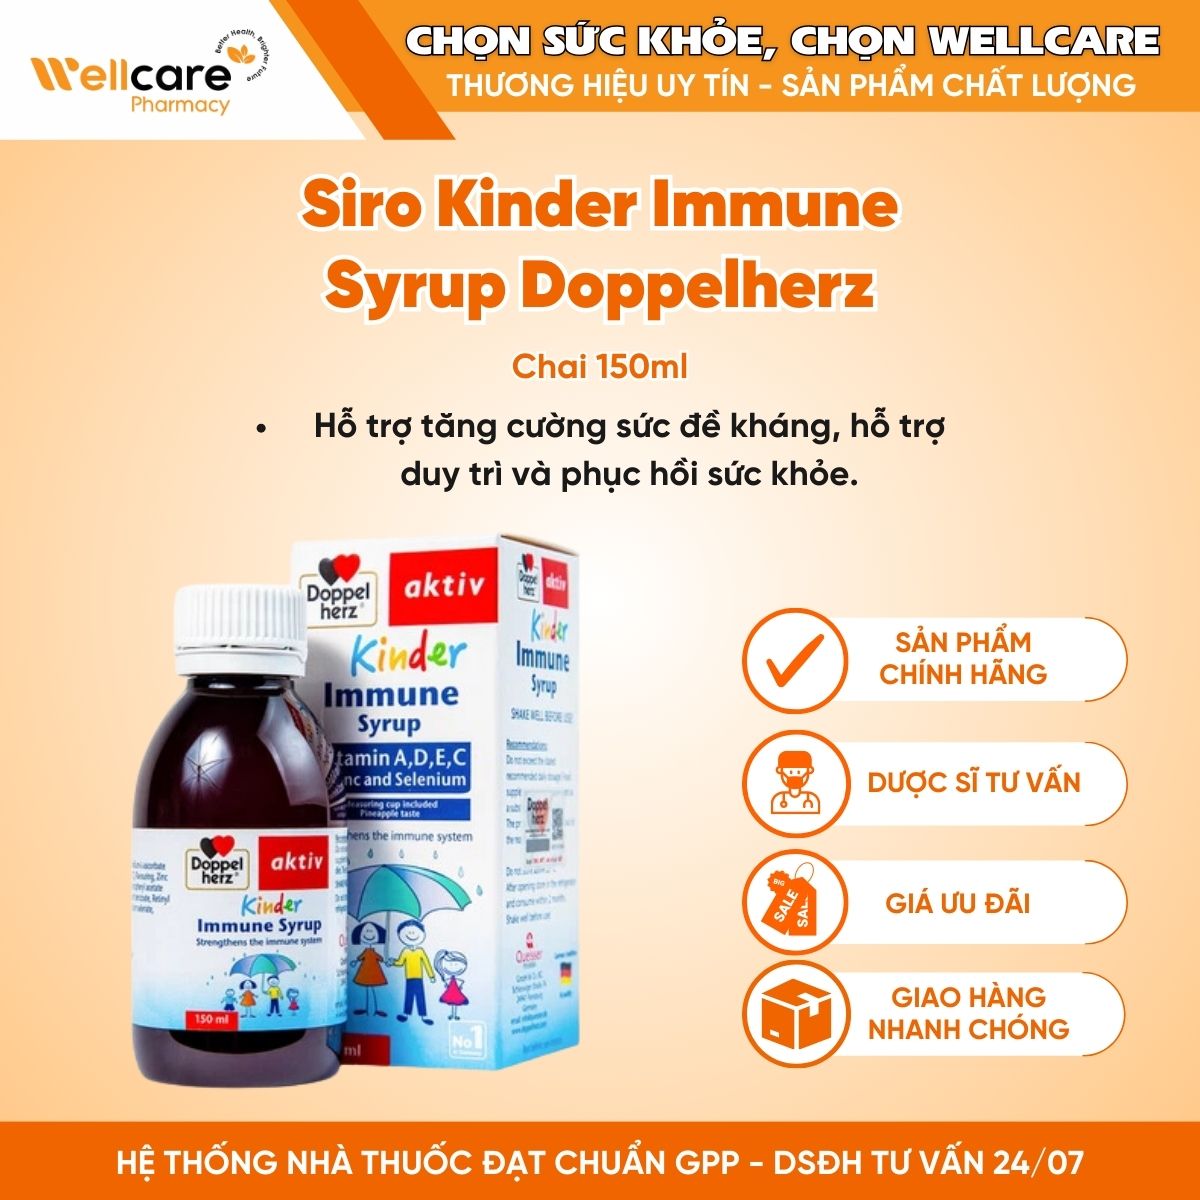 Siro Kinder Immune Syrup Doppelherz – Tăng cường sức đề kháng (Chai 150ml)